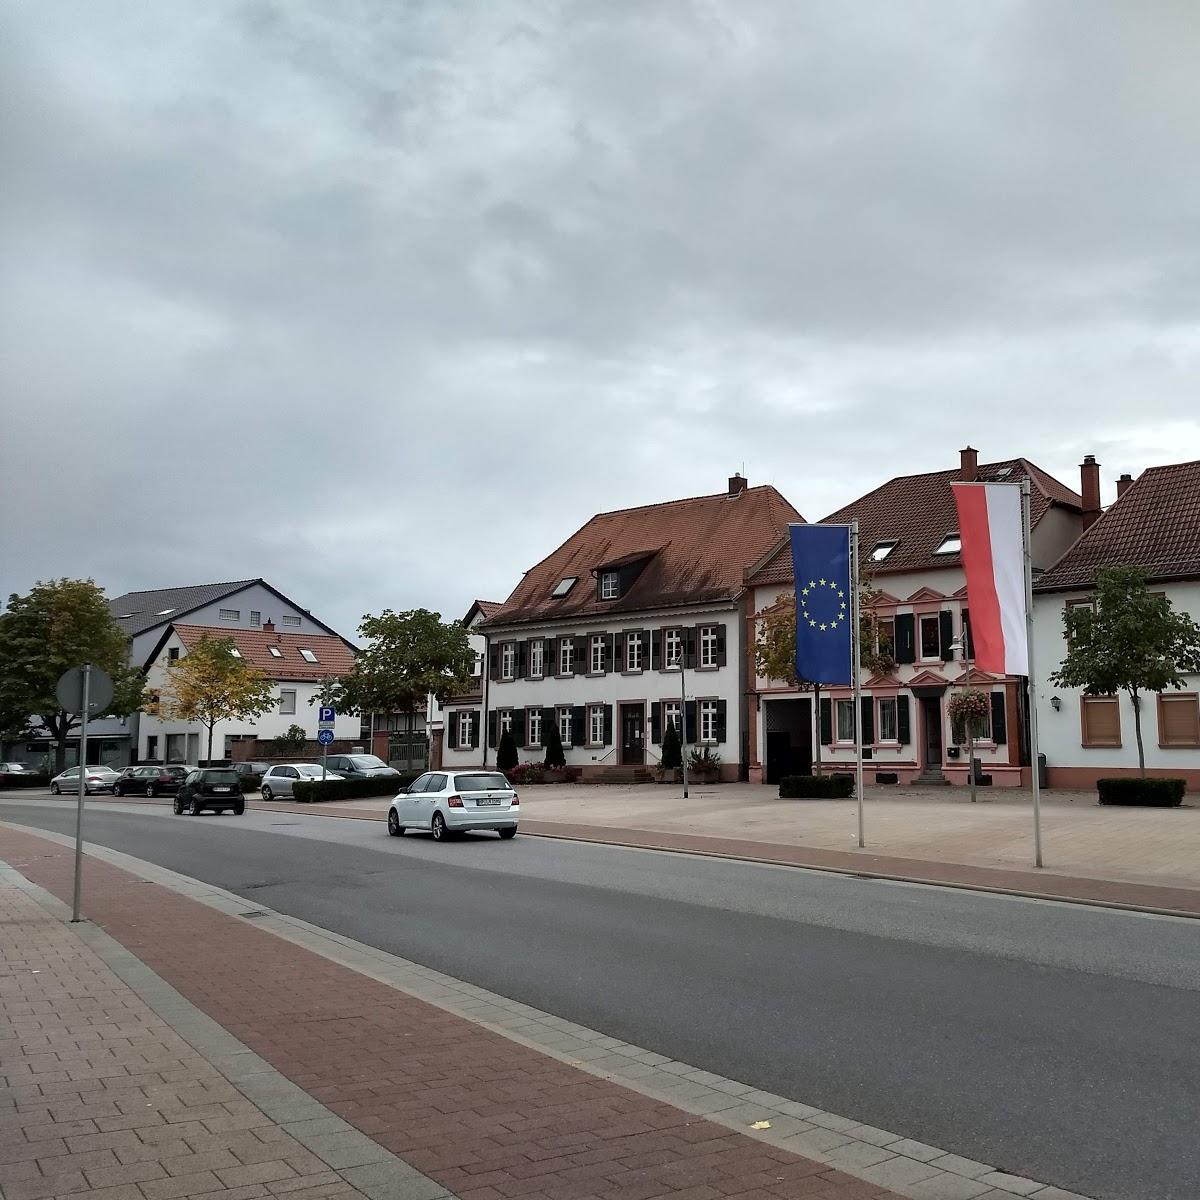 Restaurant "Döner am Römer" in Lampertheim